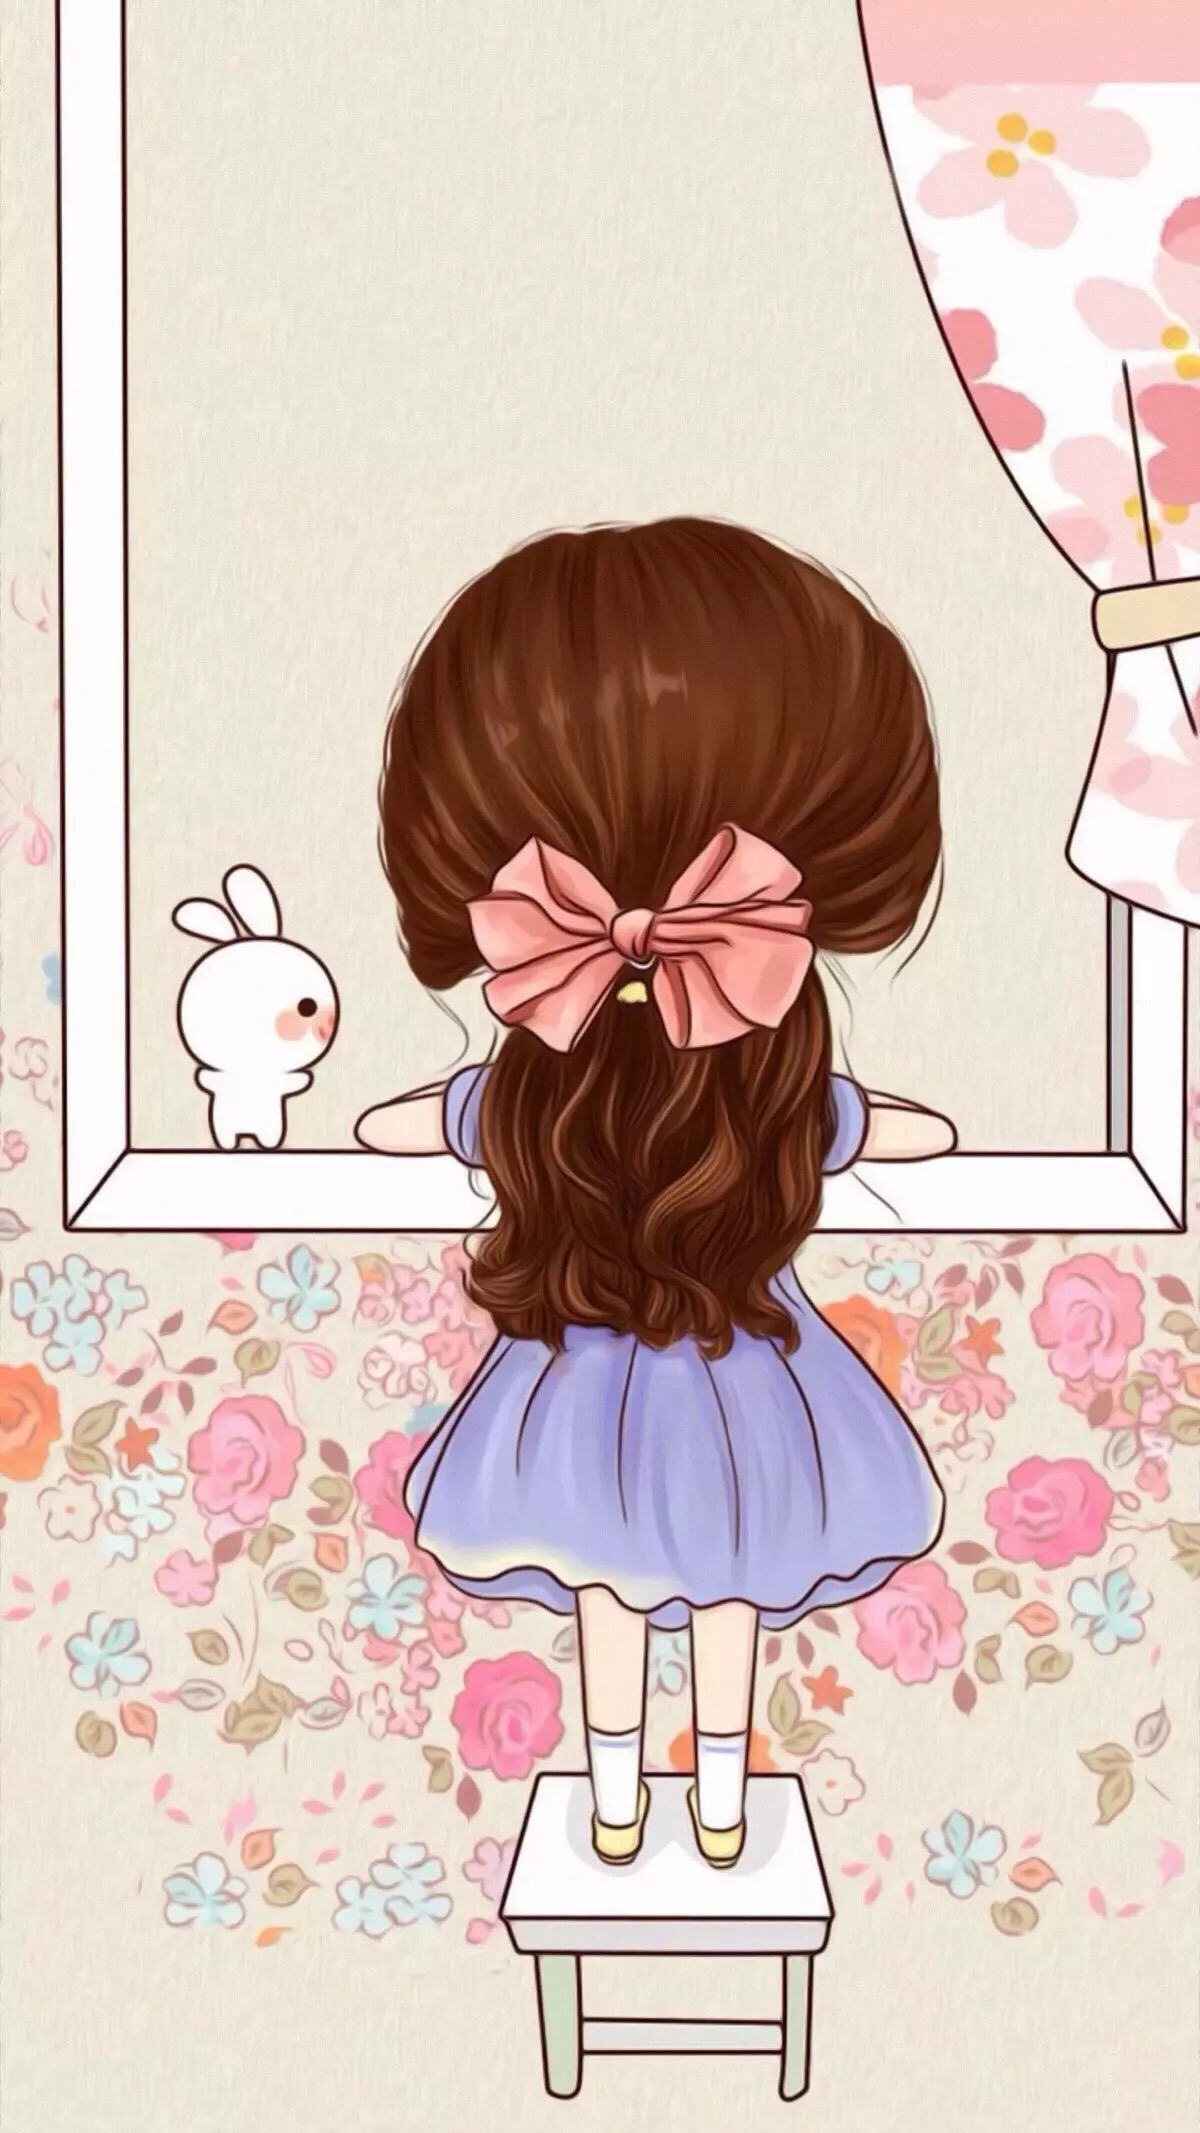 卡通插画 女孩与兔子 背影 可爱 手机壁纸 聊天背景